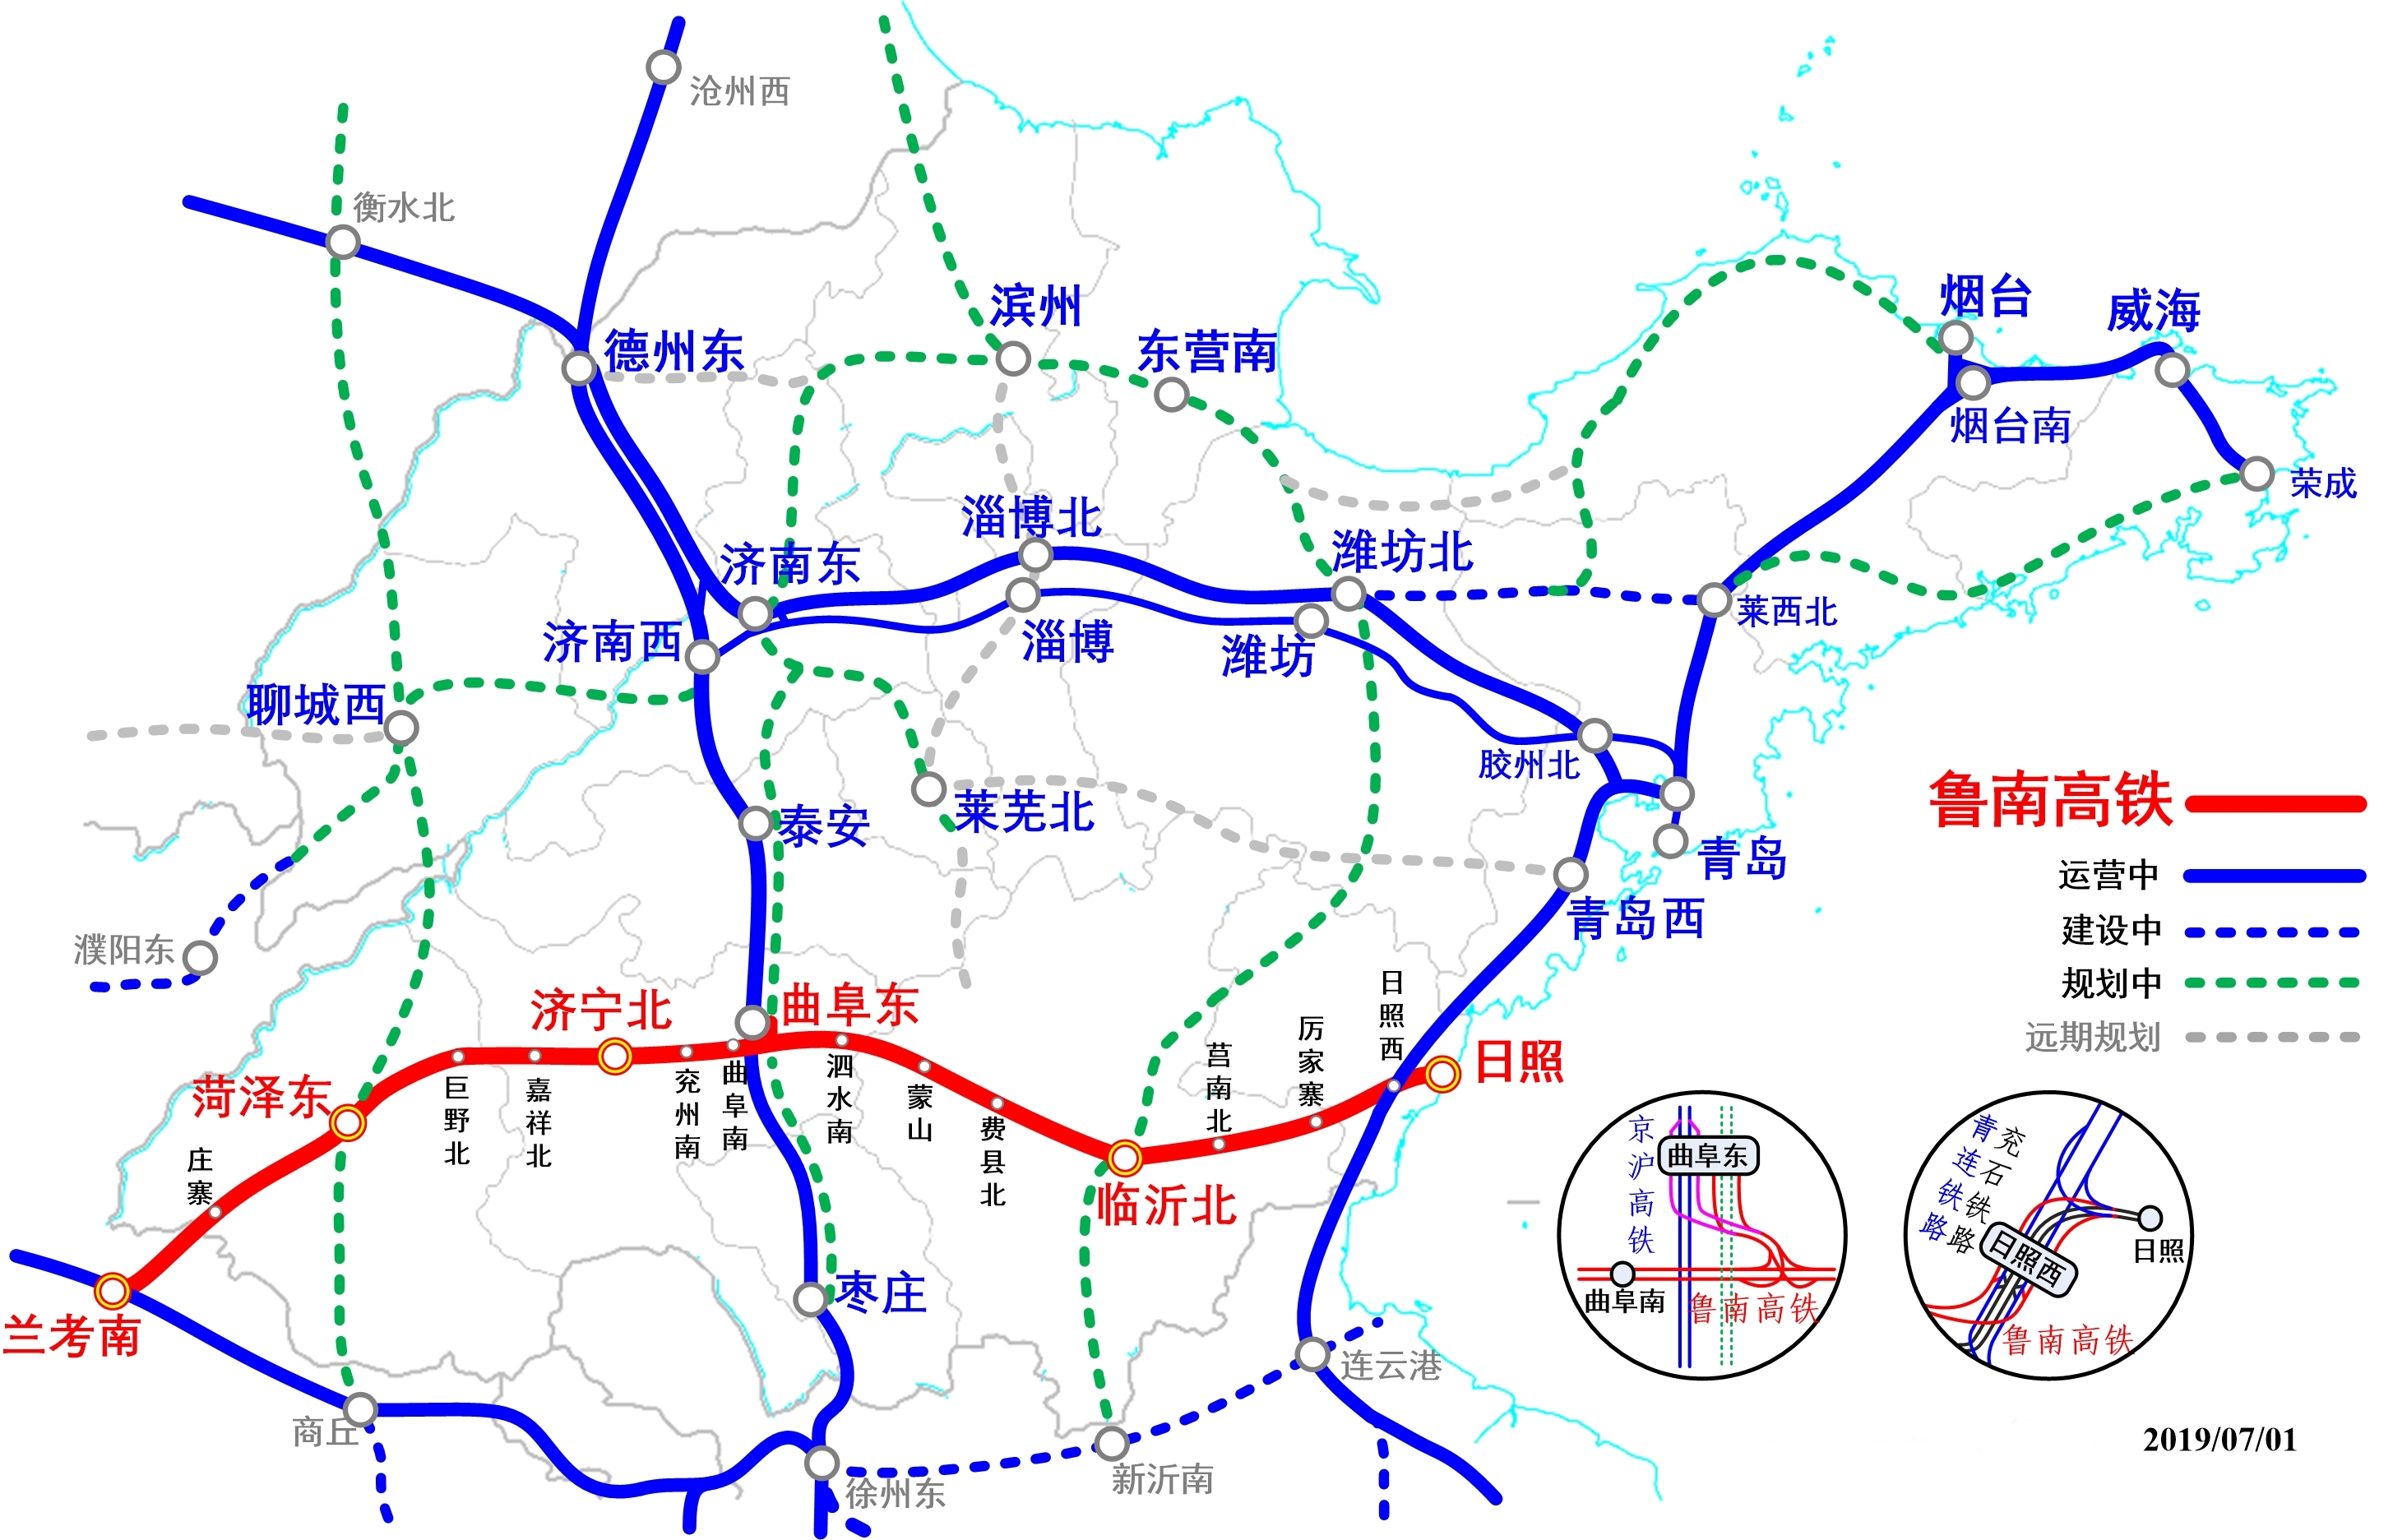 建成后可在曲阜东站直接接入京沪高铁(北向),并在菏泽东站与规划中的